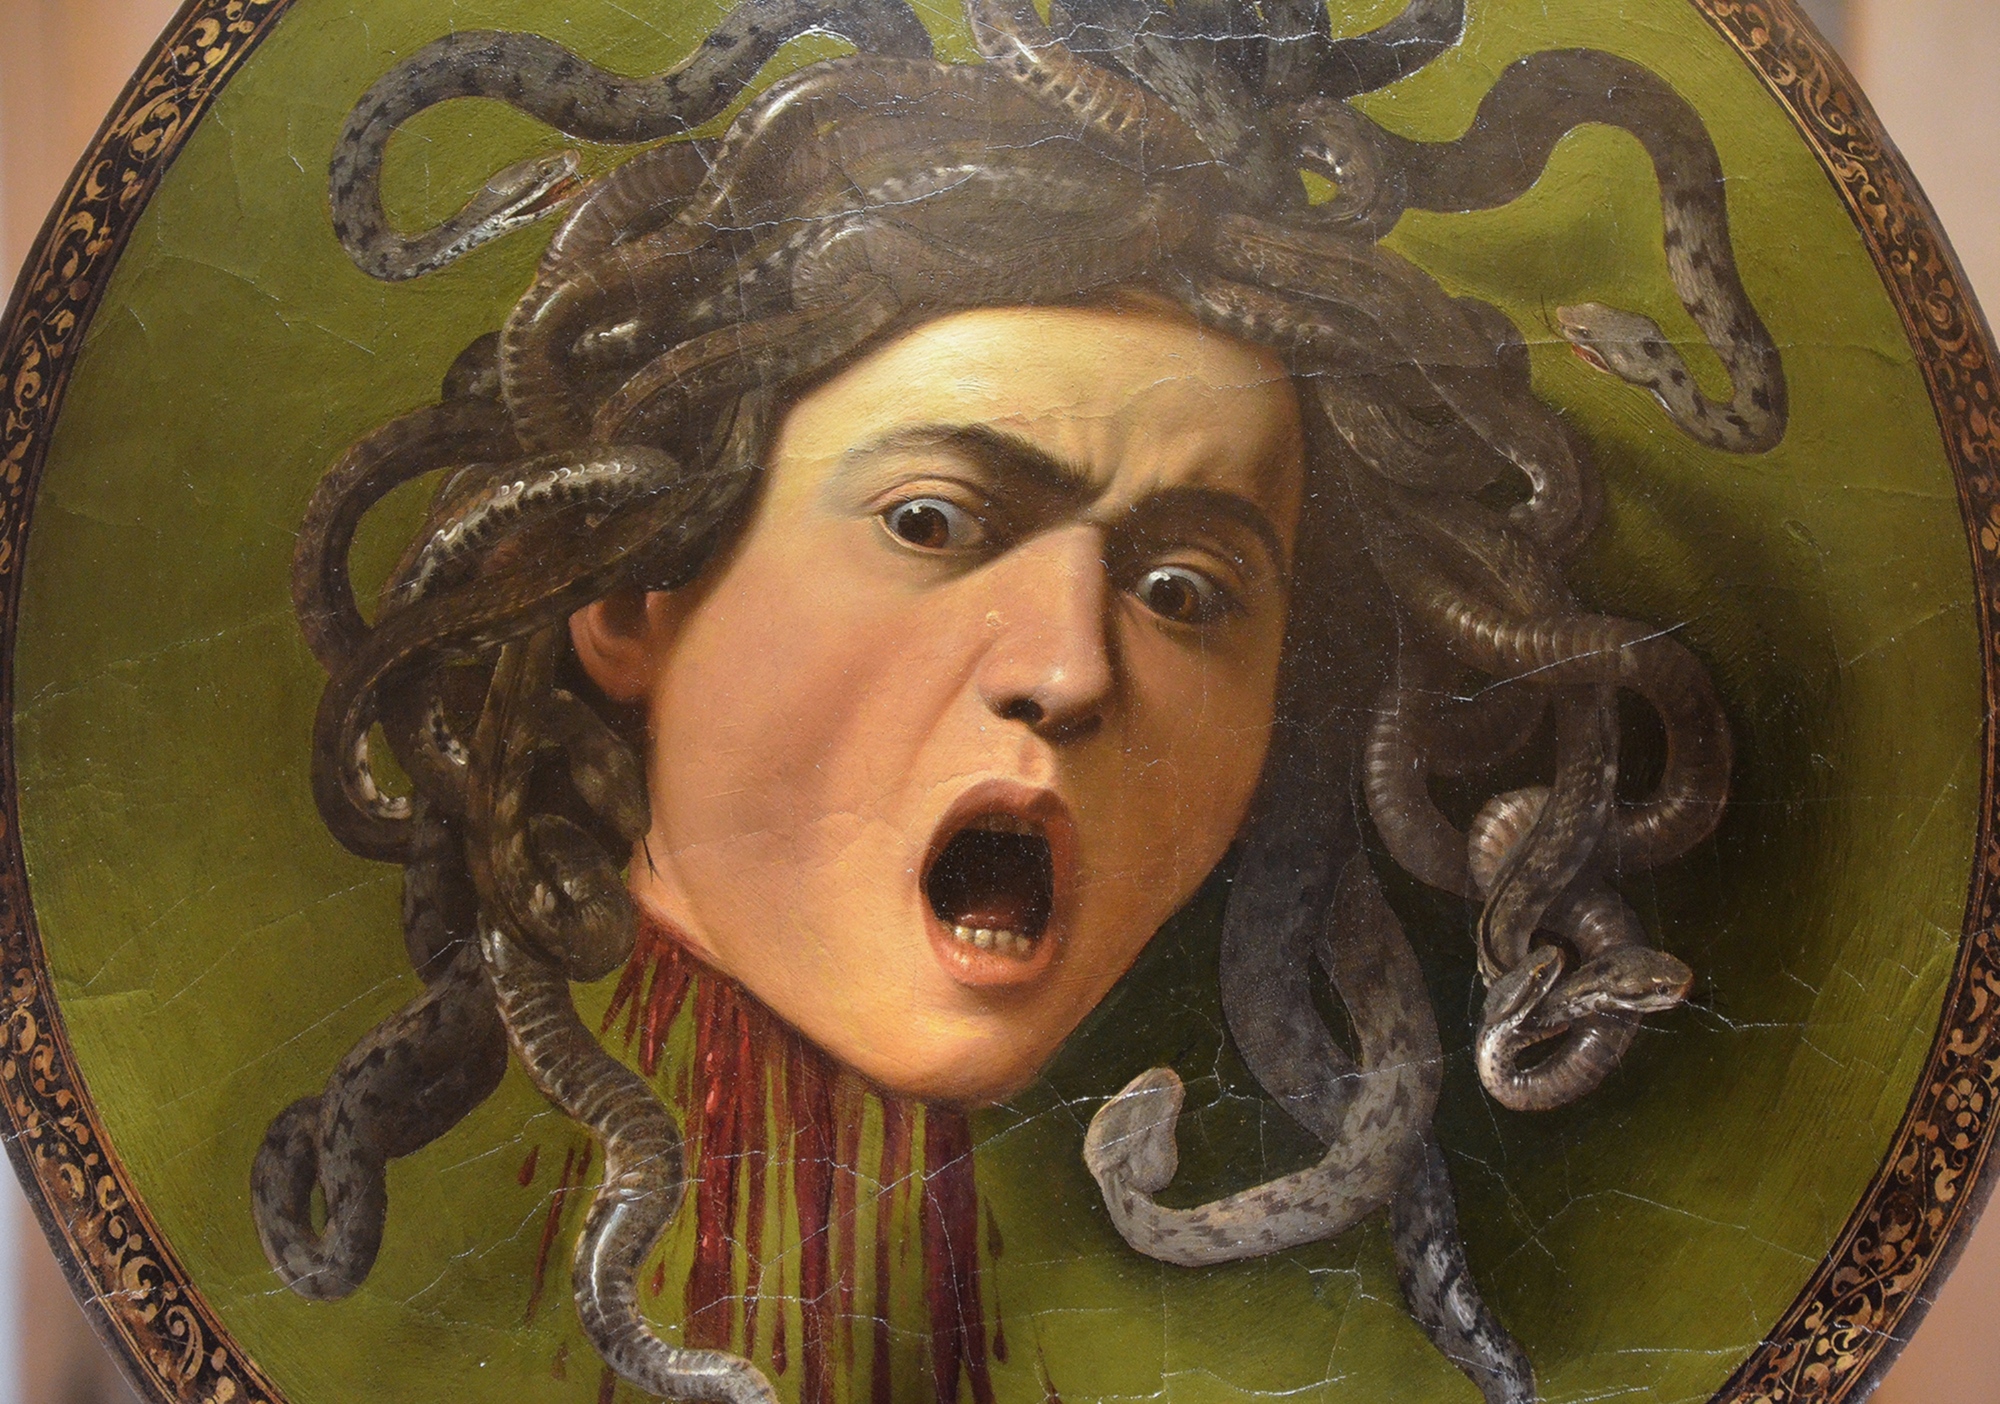 Caravaggio's Medusa